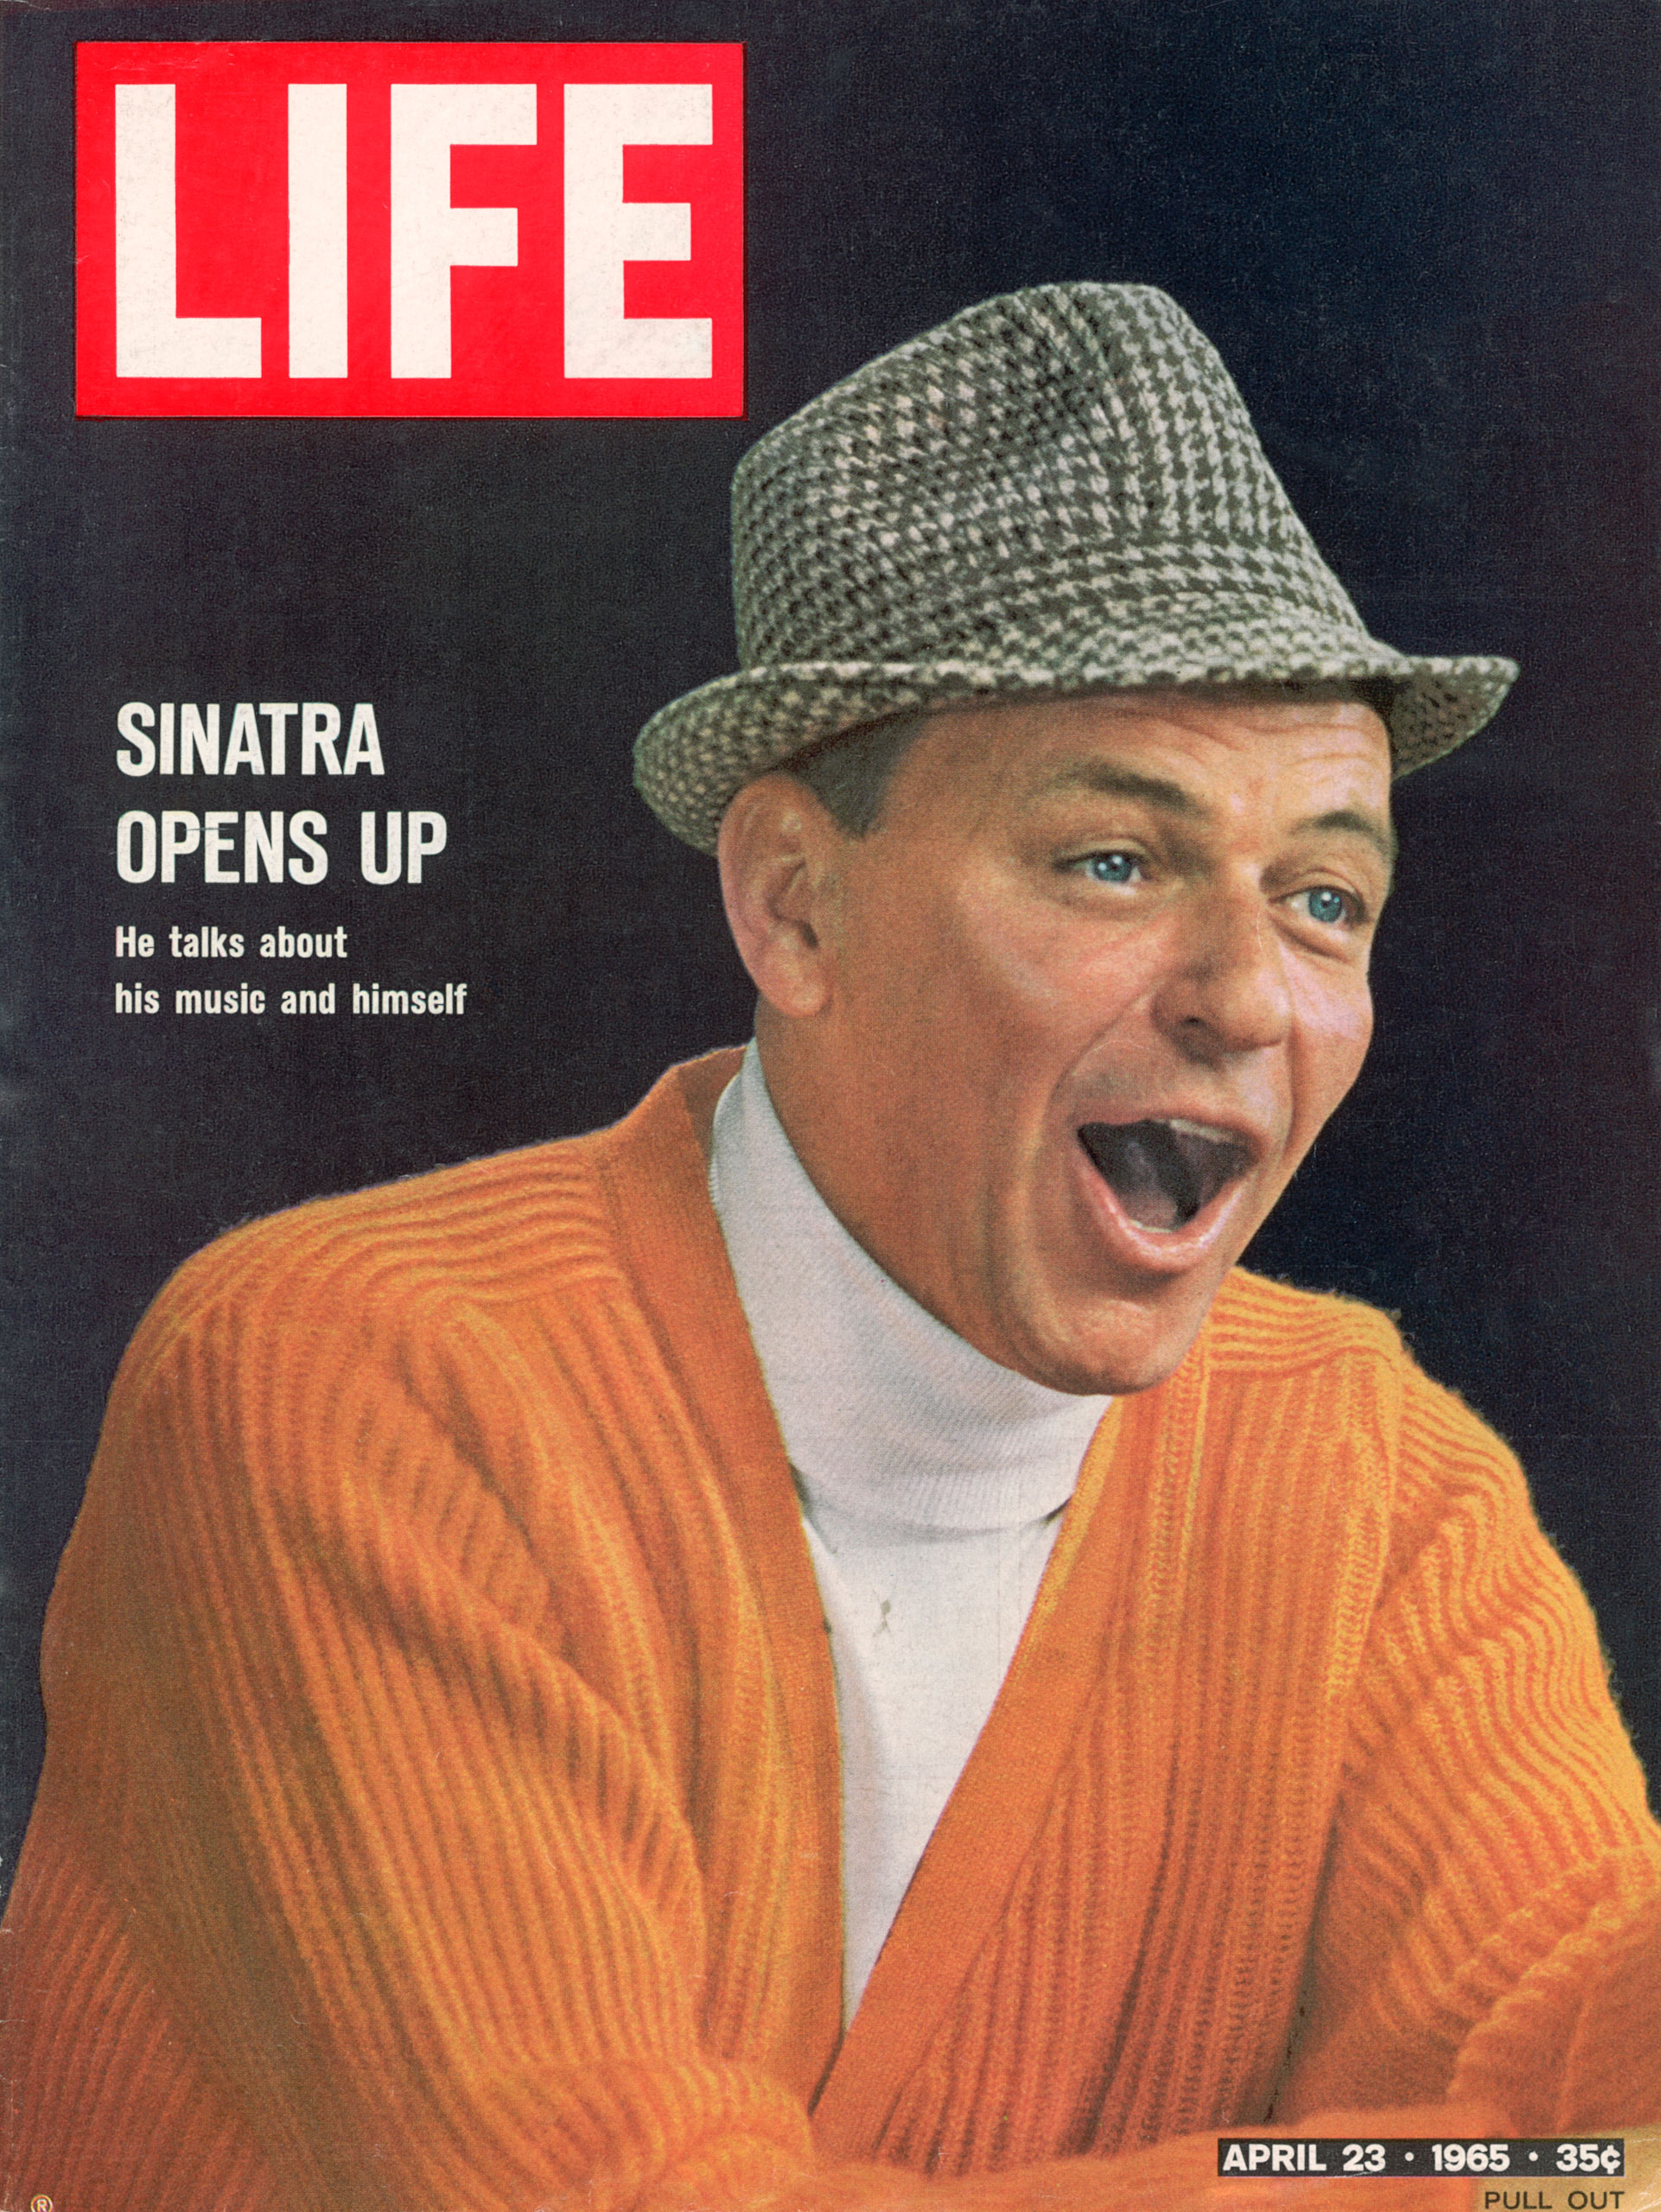 Frank Sinatra LIFE cover, April 23, 1965